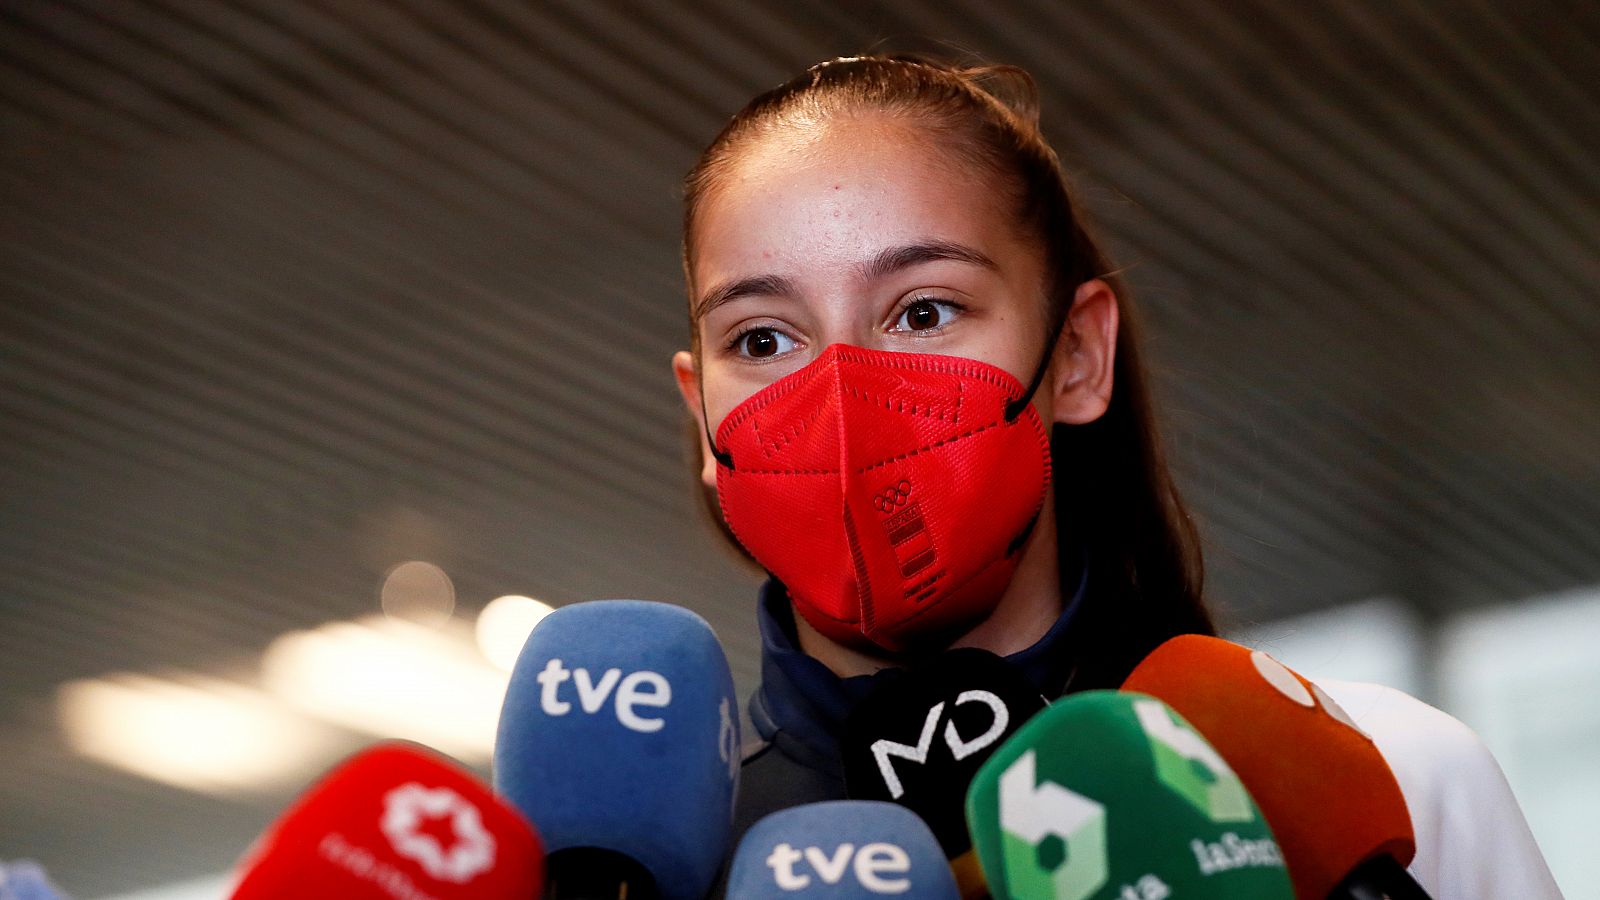 Adriana Cerezo visita la Warner nada más llegar a España con su plata olímpica: "Lo prometí y he cumplido"